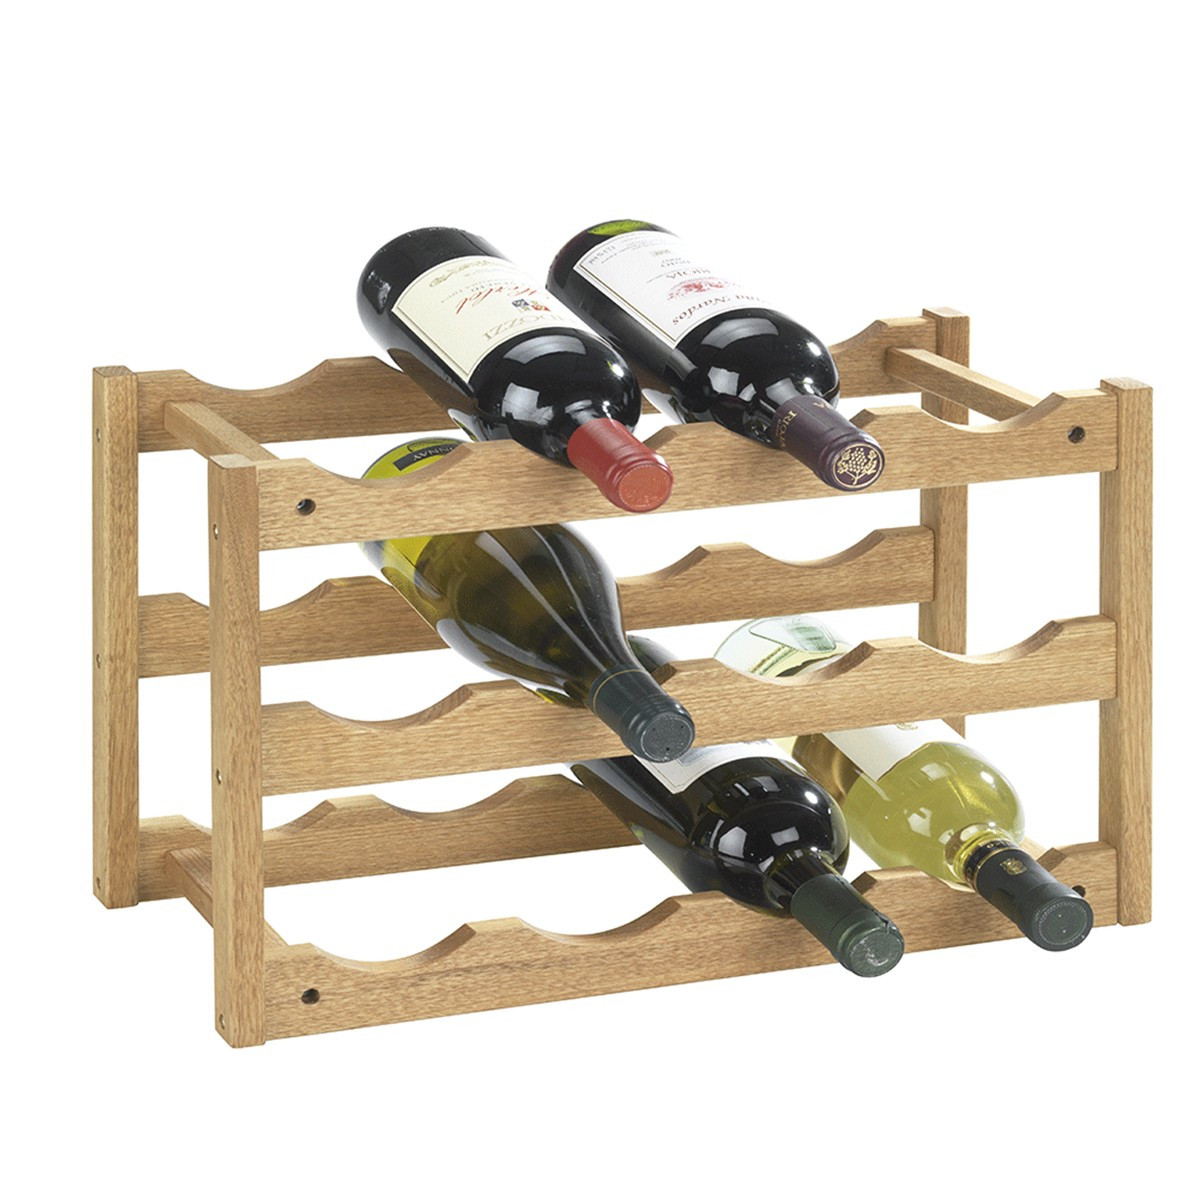 Rack à vin empilable en bois de noyer - Cave - Rangement vin - ON